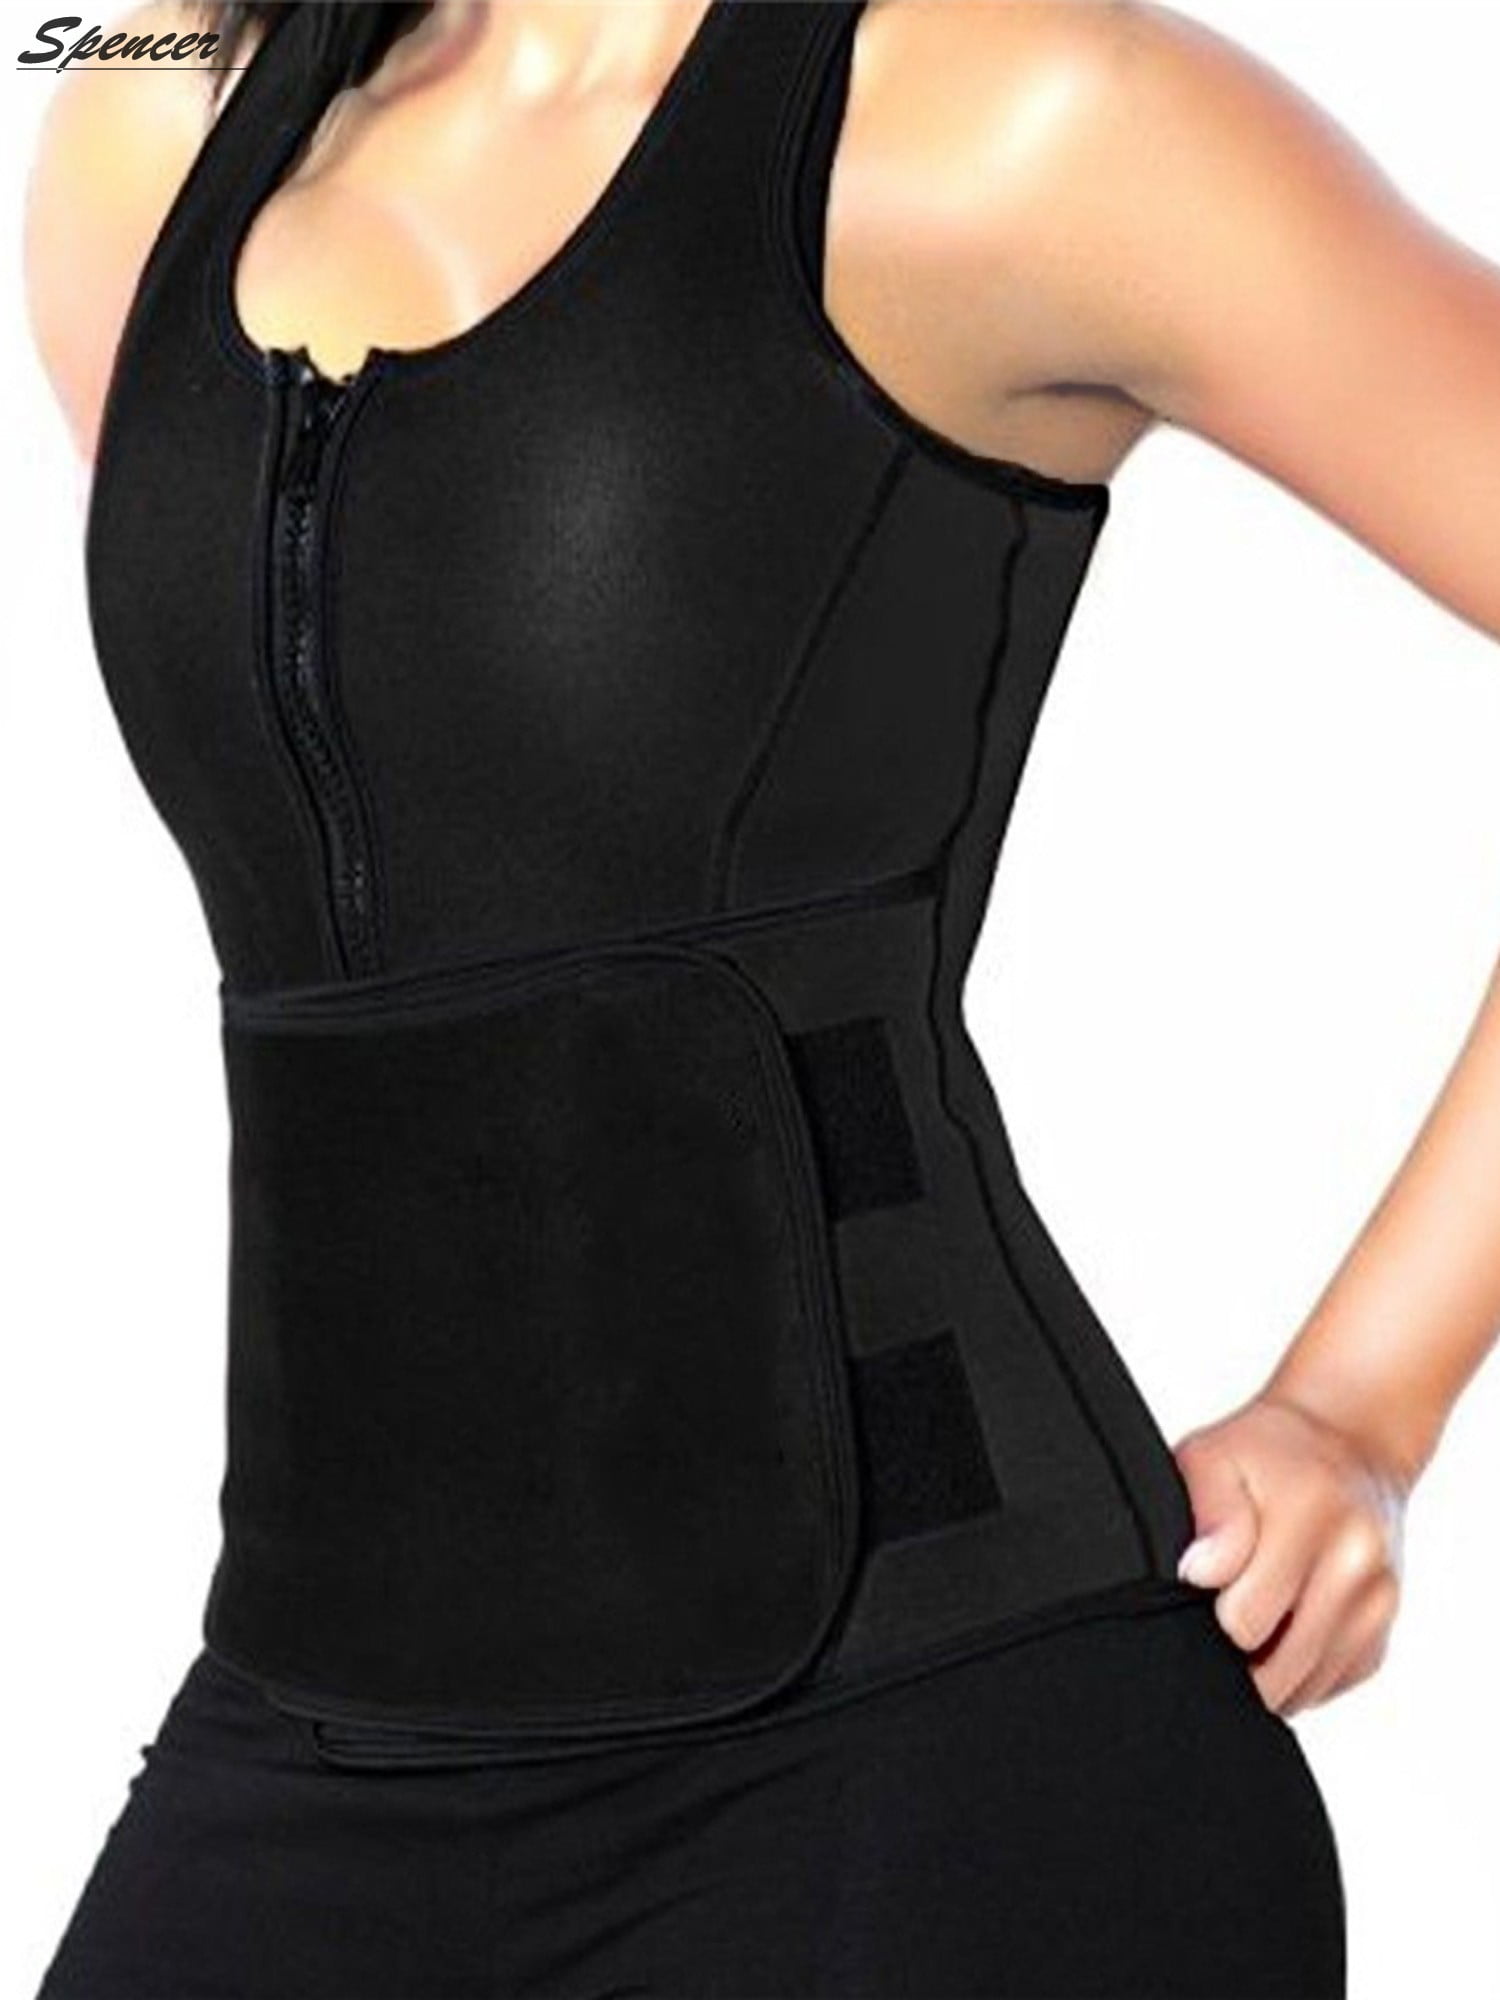 YIANNA Sweat Neoprene Sauna Suit Tank Top Vest with Adjustable Shaper Waist Trainer Belt